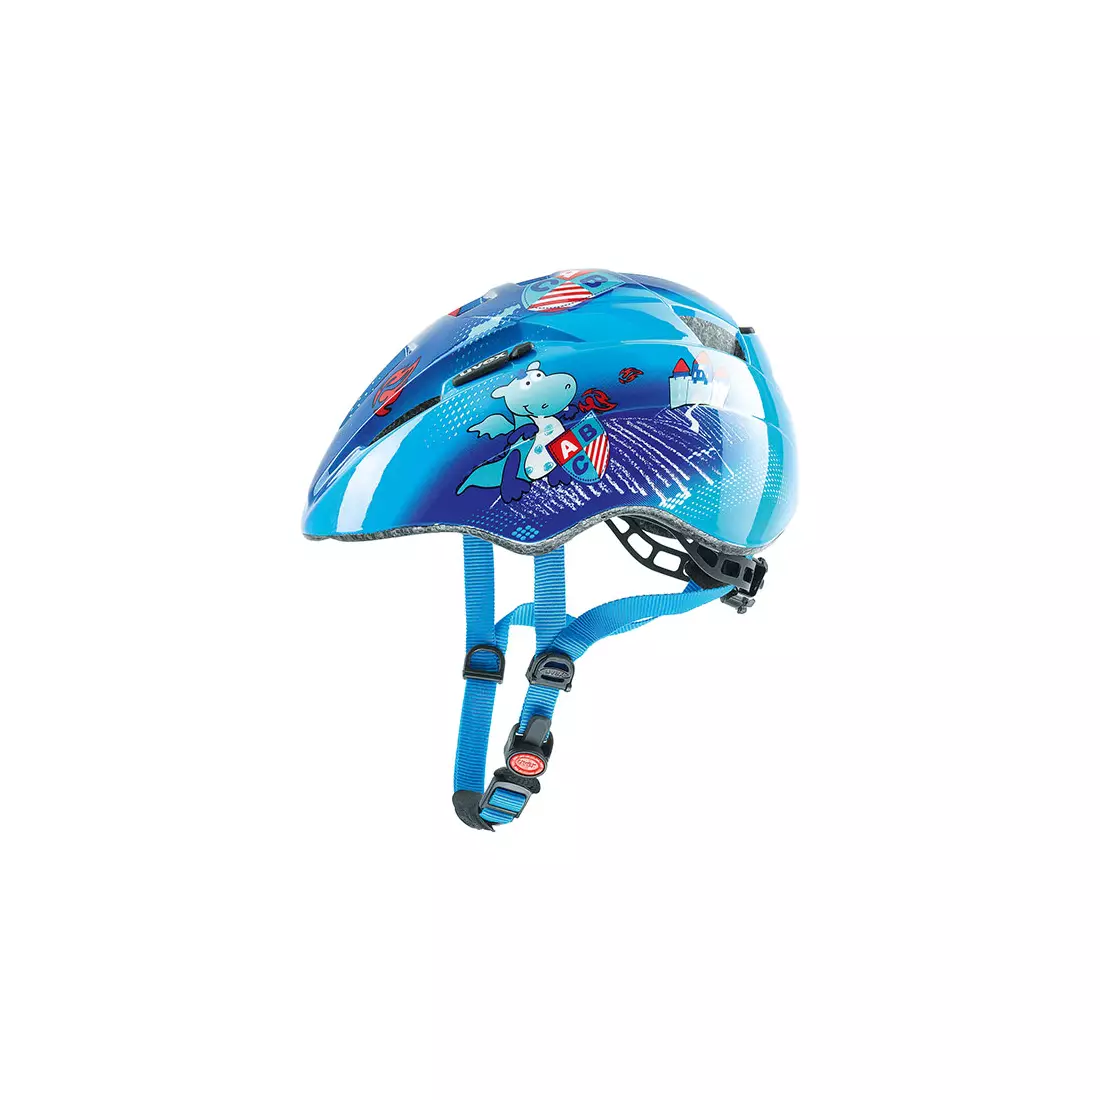 UVEX KID 2 CASTLE children's bicycle helmet